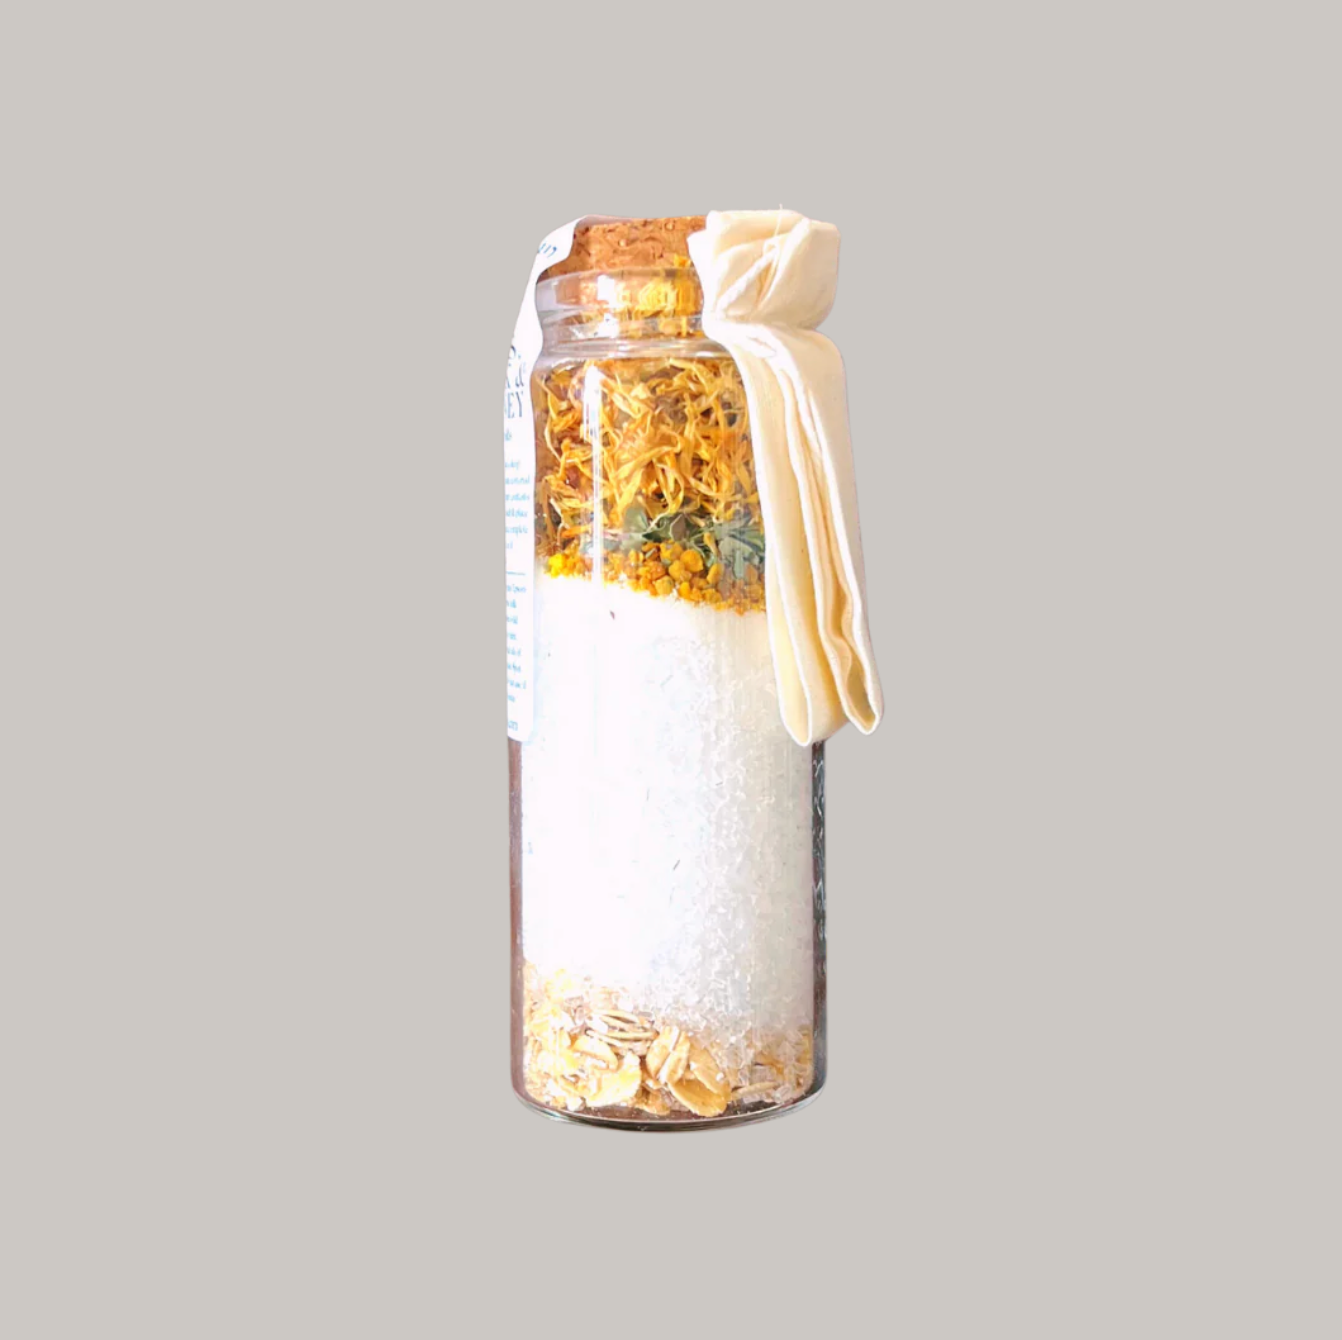 ‘Oats, Milk & Honey’ Bath Salt